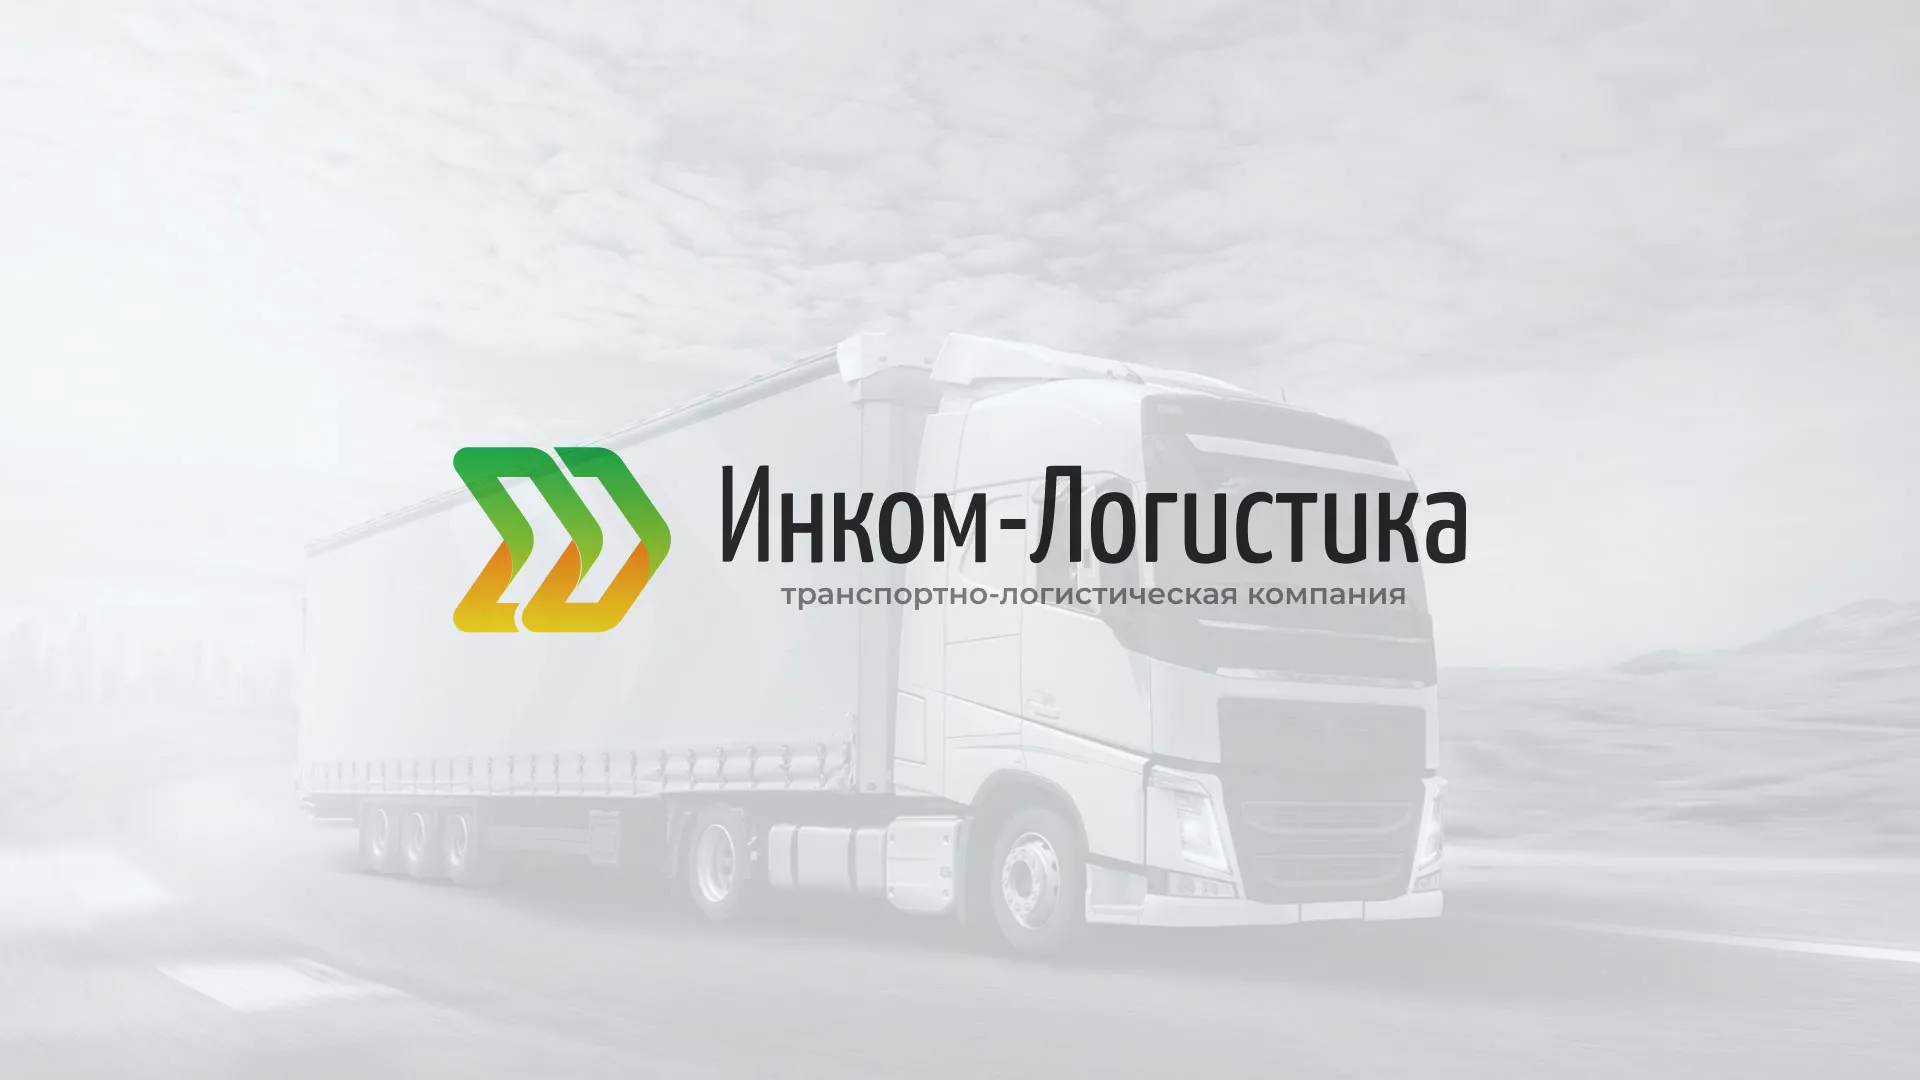 Разработка логотипа и сайта компании «Инком-Логистика» в Лабинске